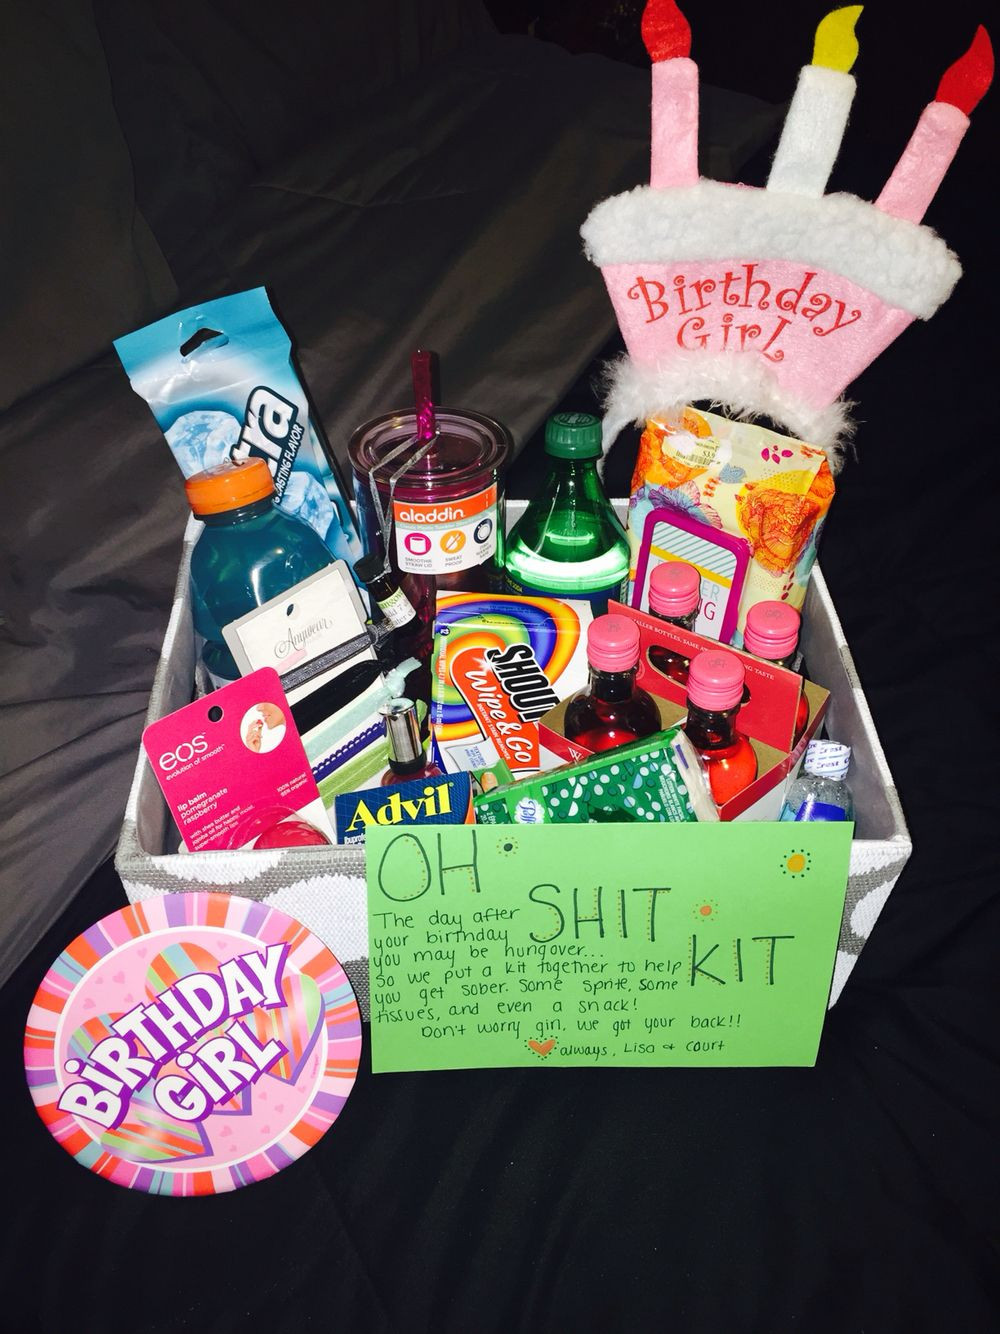 Best Friend Birthday Gift Basket Ideas
 Bestfriend s 21st birthday "Oh Shit Kit"